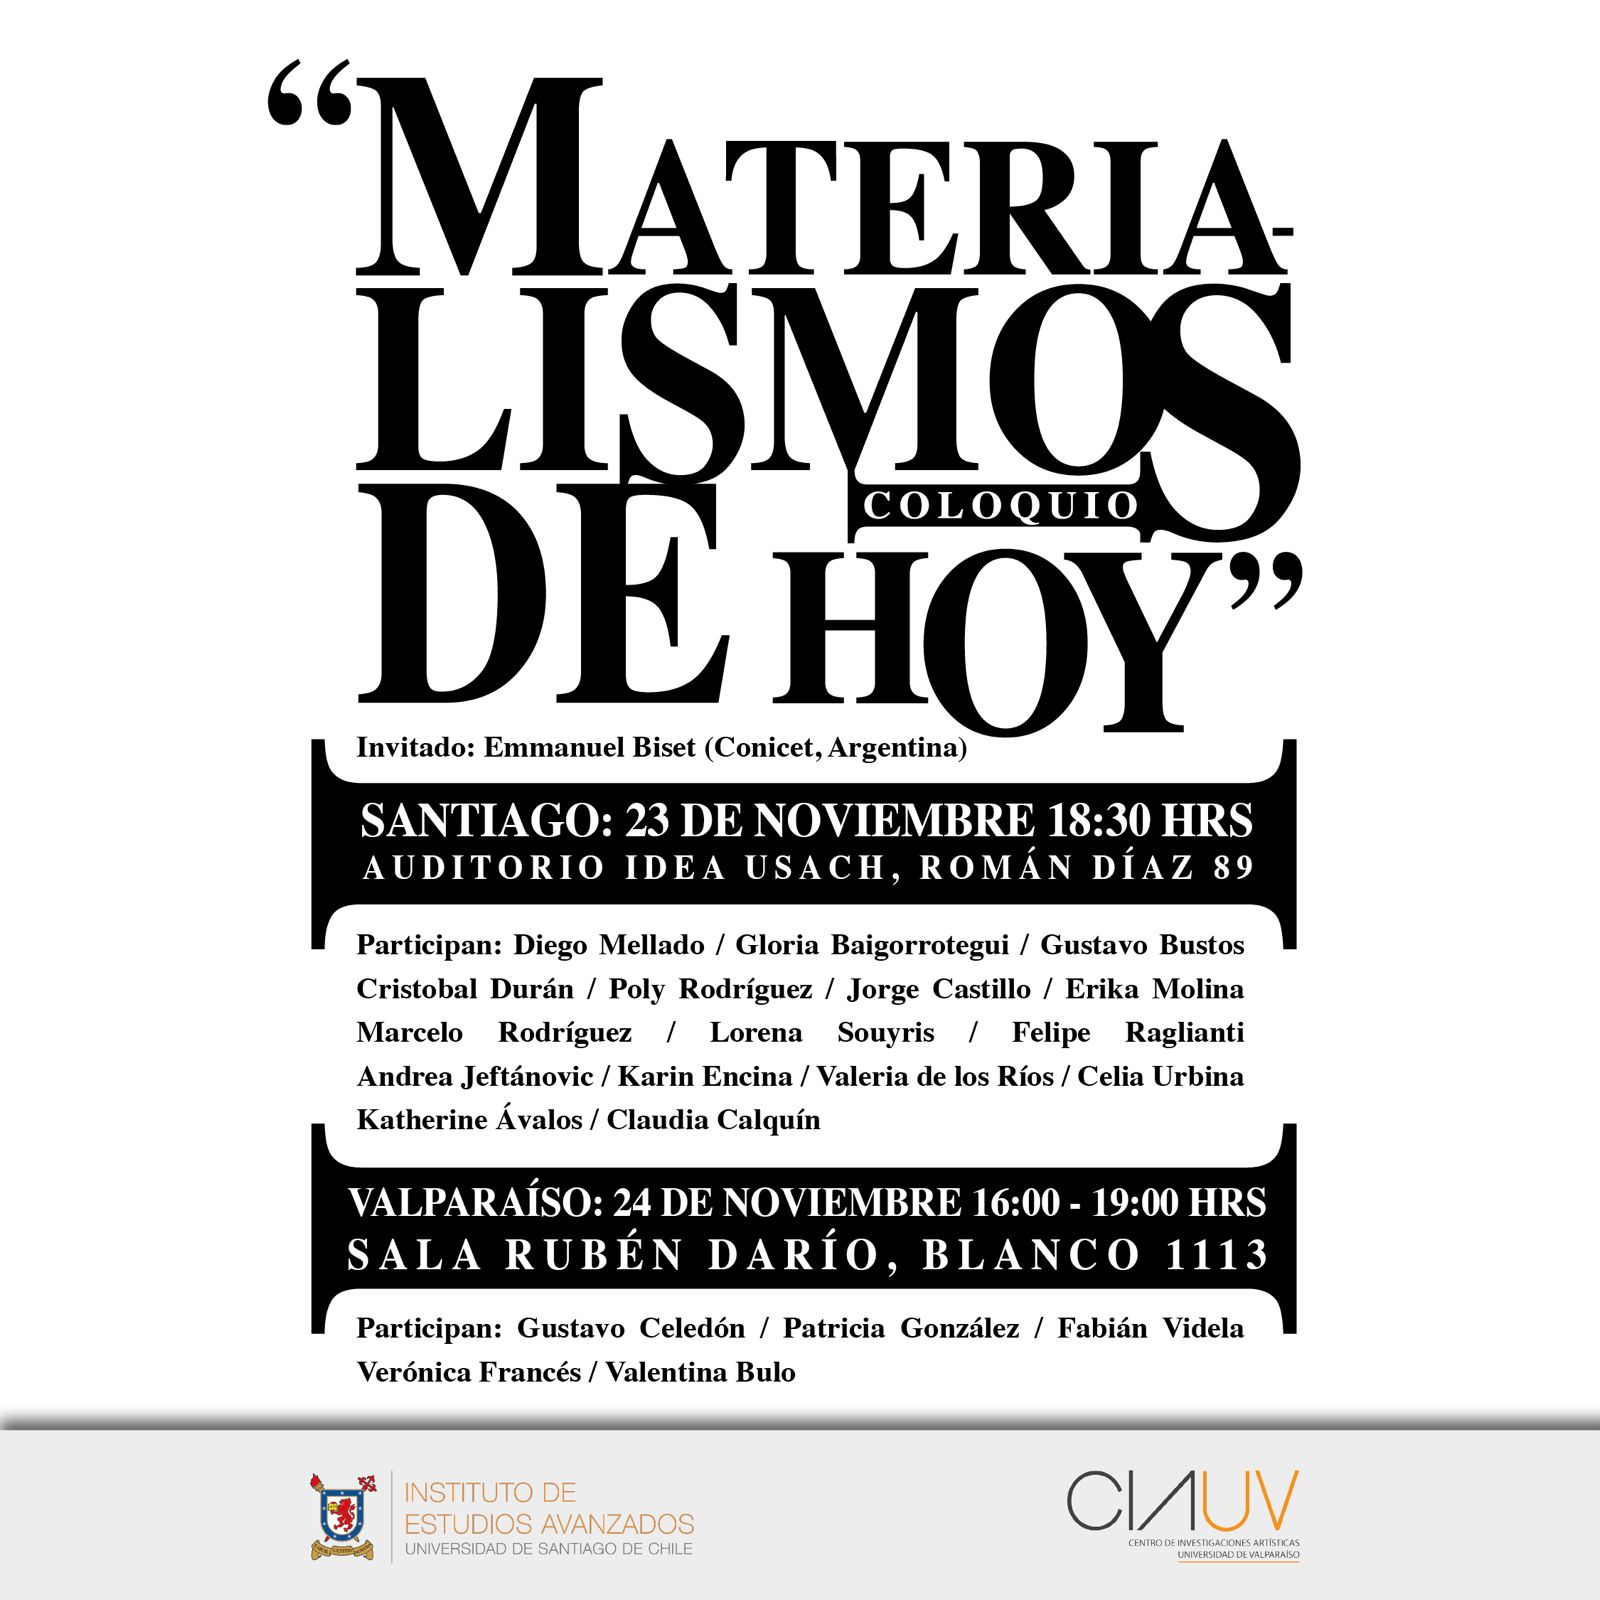 Coloquio: Materialismos de Hoy - 23 nov 18:30 hrs.